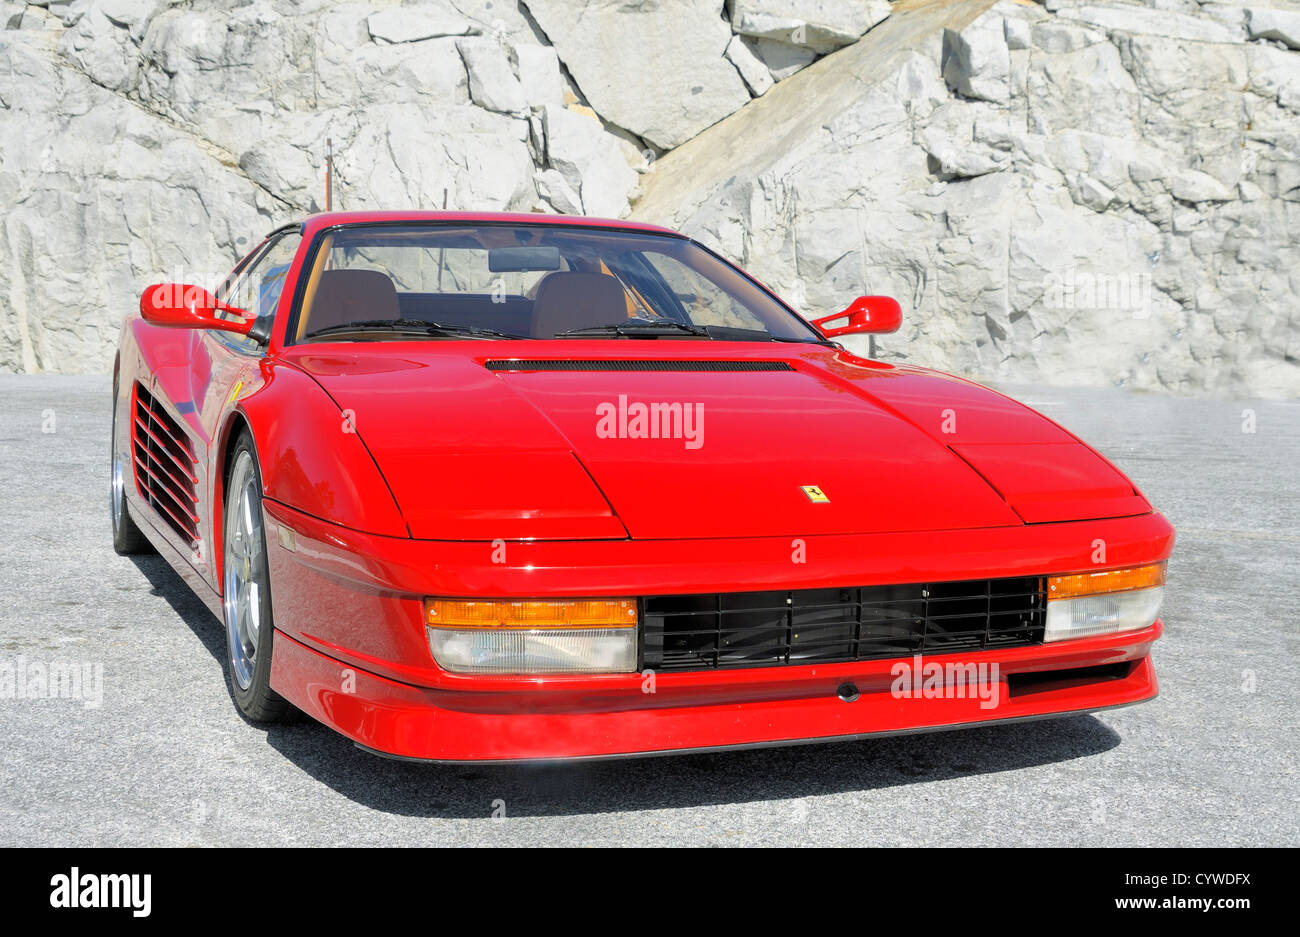 Una Ferrari rossa Testarossa, una vettura sportiva a 12 cilindri con motore centrale. Prodotto originariamente nel 1984, sono state vendute diecimila unità. Foto Stock